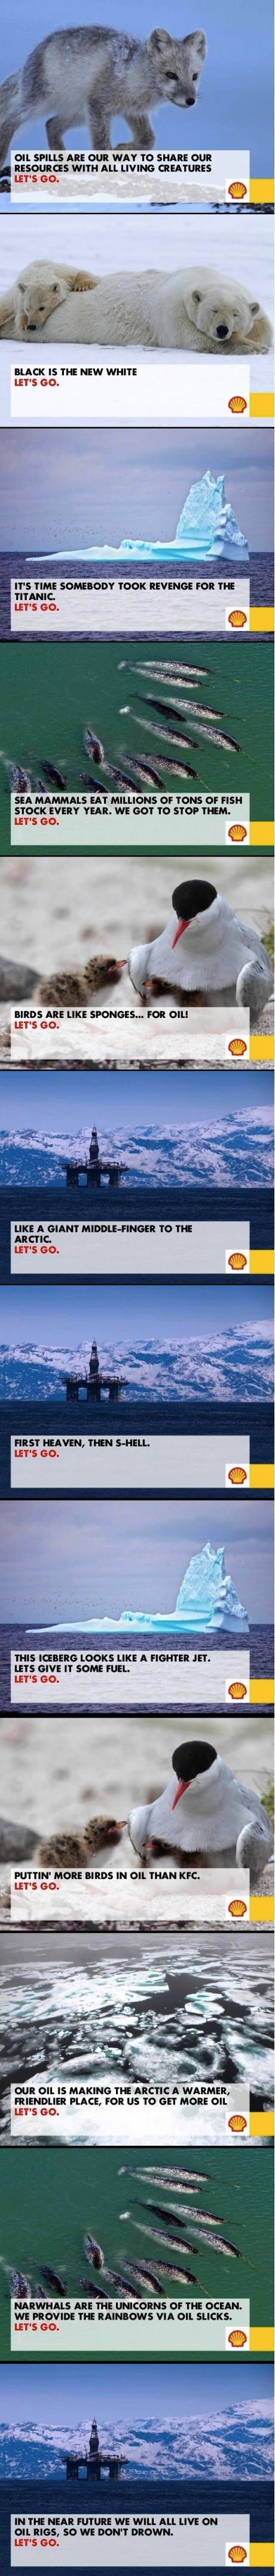 Shell ad contest failure.